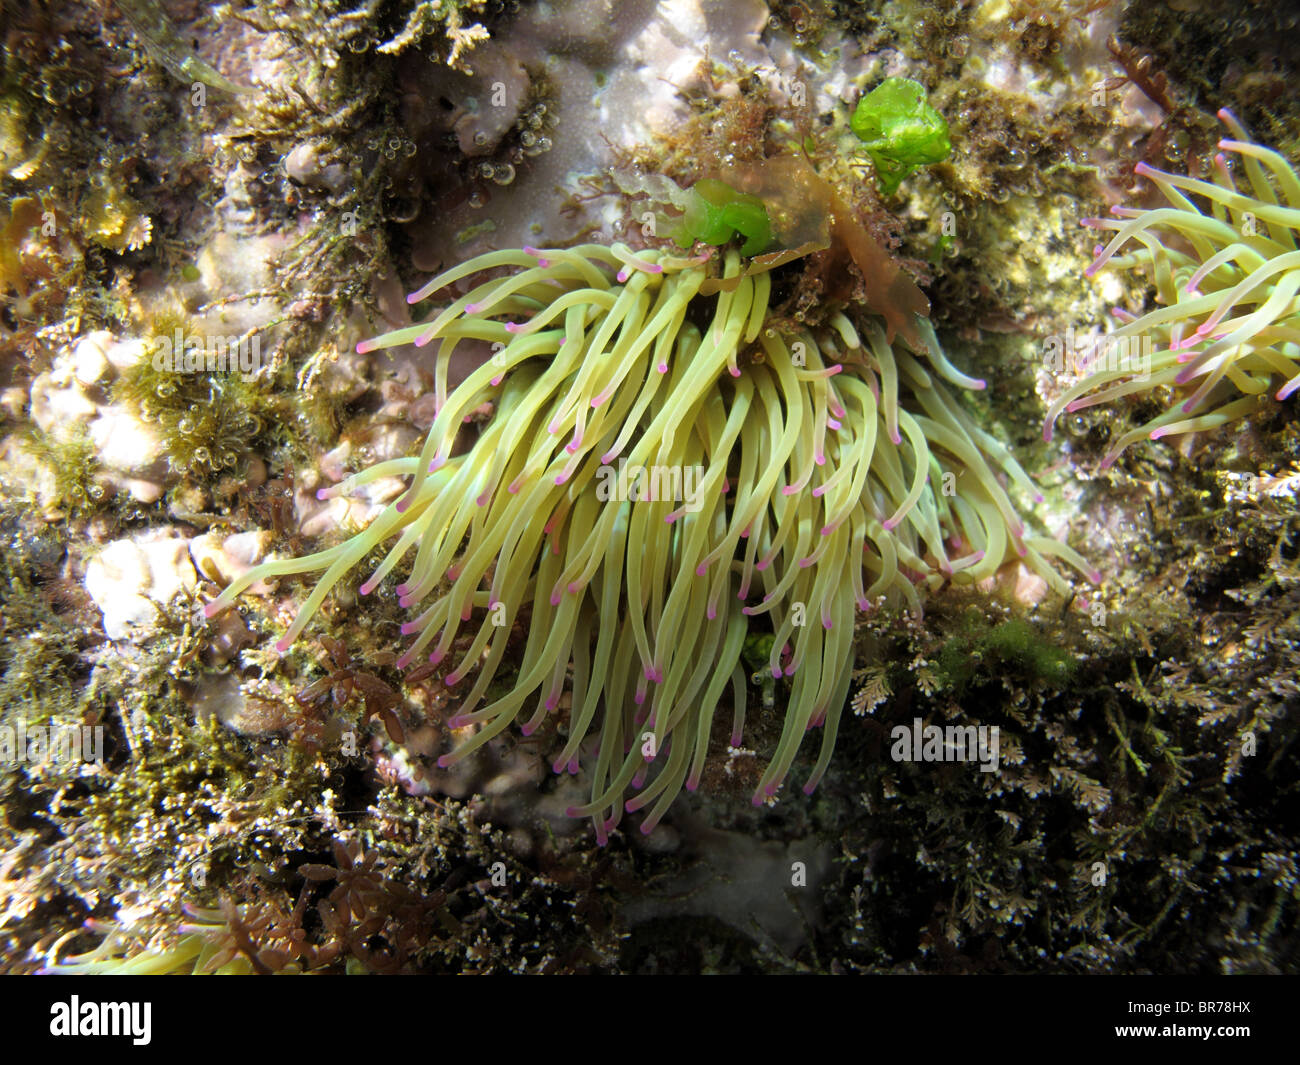 Snakelocks anemone (Anemonia viridis) Stock Photo